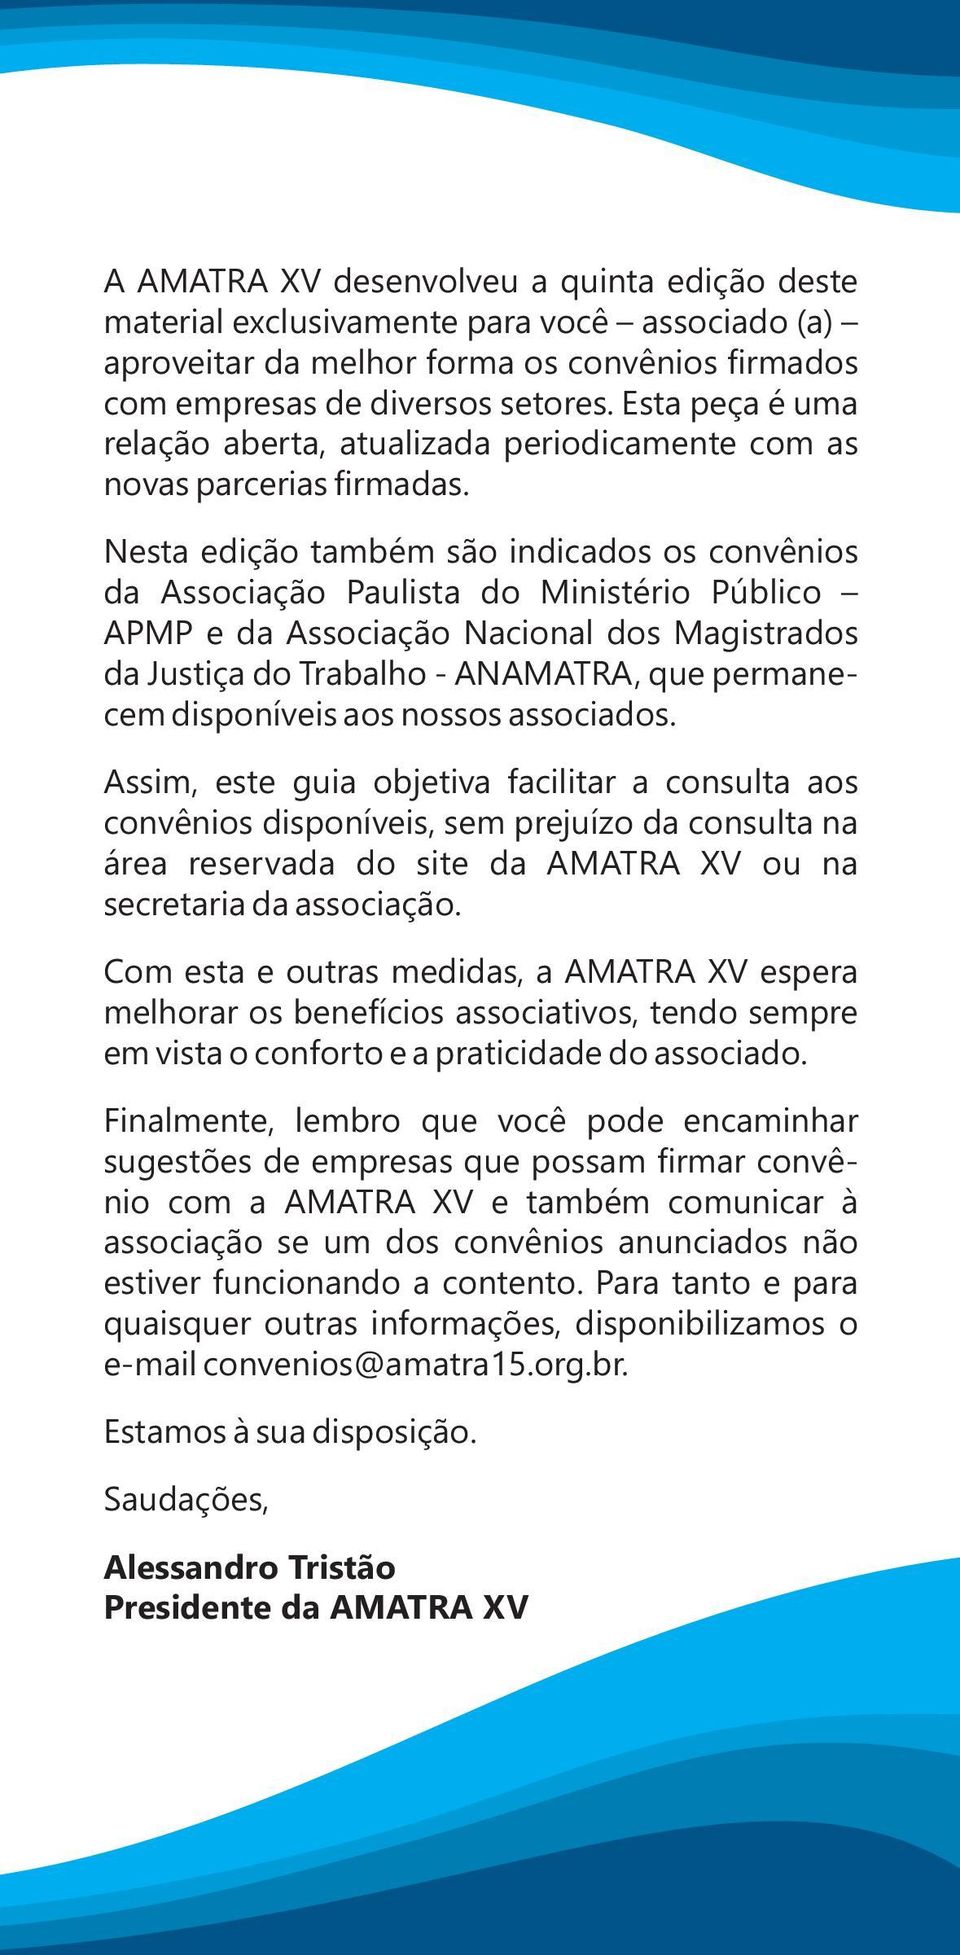 Nesta edição também são indicados os convênios da Associação Paulista do Ministério Público APMP e da Associação Nacional dos Magistrados da Justiça do Trabalho - ANAMATRA, que permanecem disponíveis